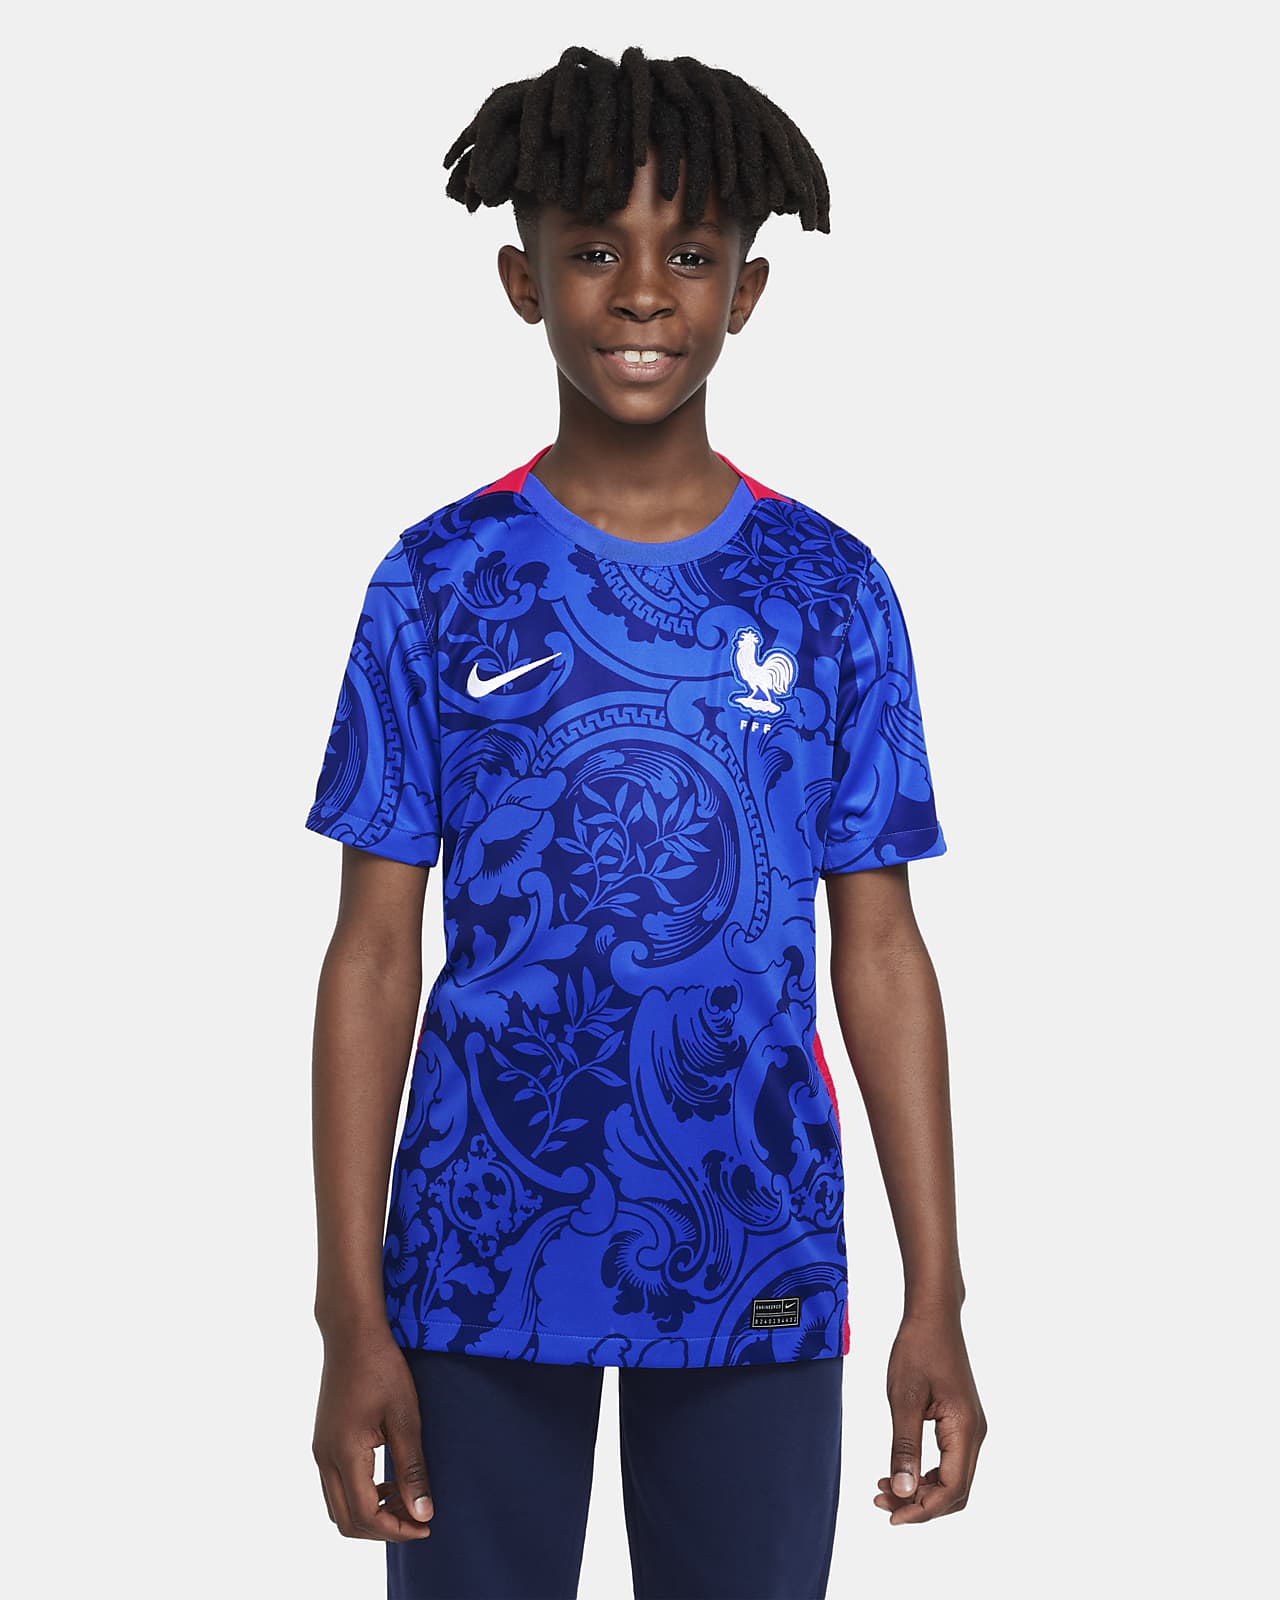 Ποδοσφαιρική φανέλα Nike εντός έδρας Γαλλική Ομοσπονδία Ποδοσφαίρου 2022 Stadium για μεγάλα παιδιά